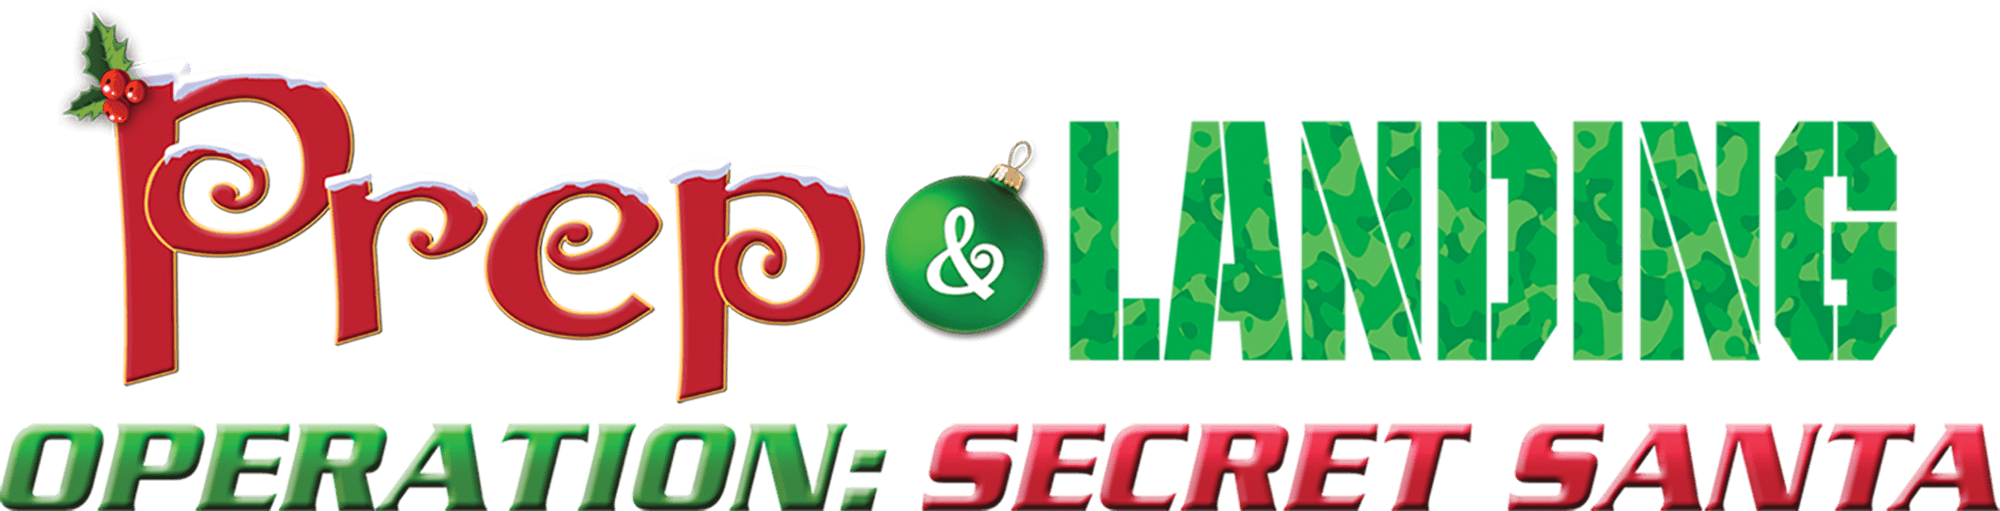 Prep & Landing Stocking Stuffer: Operation: Secret Santa logo